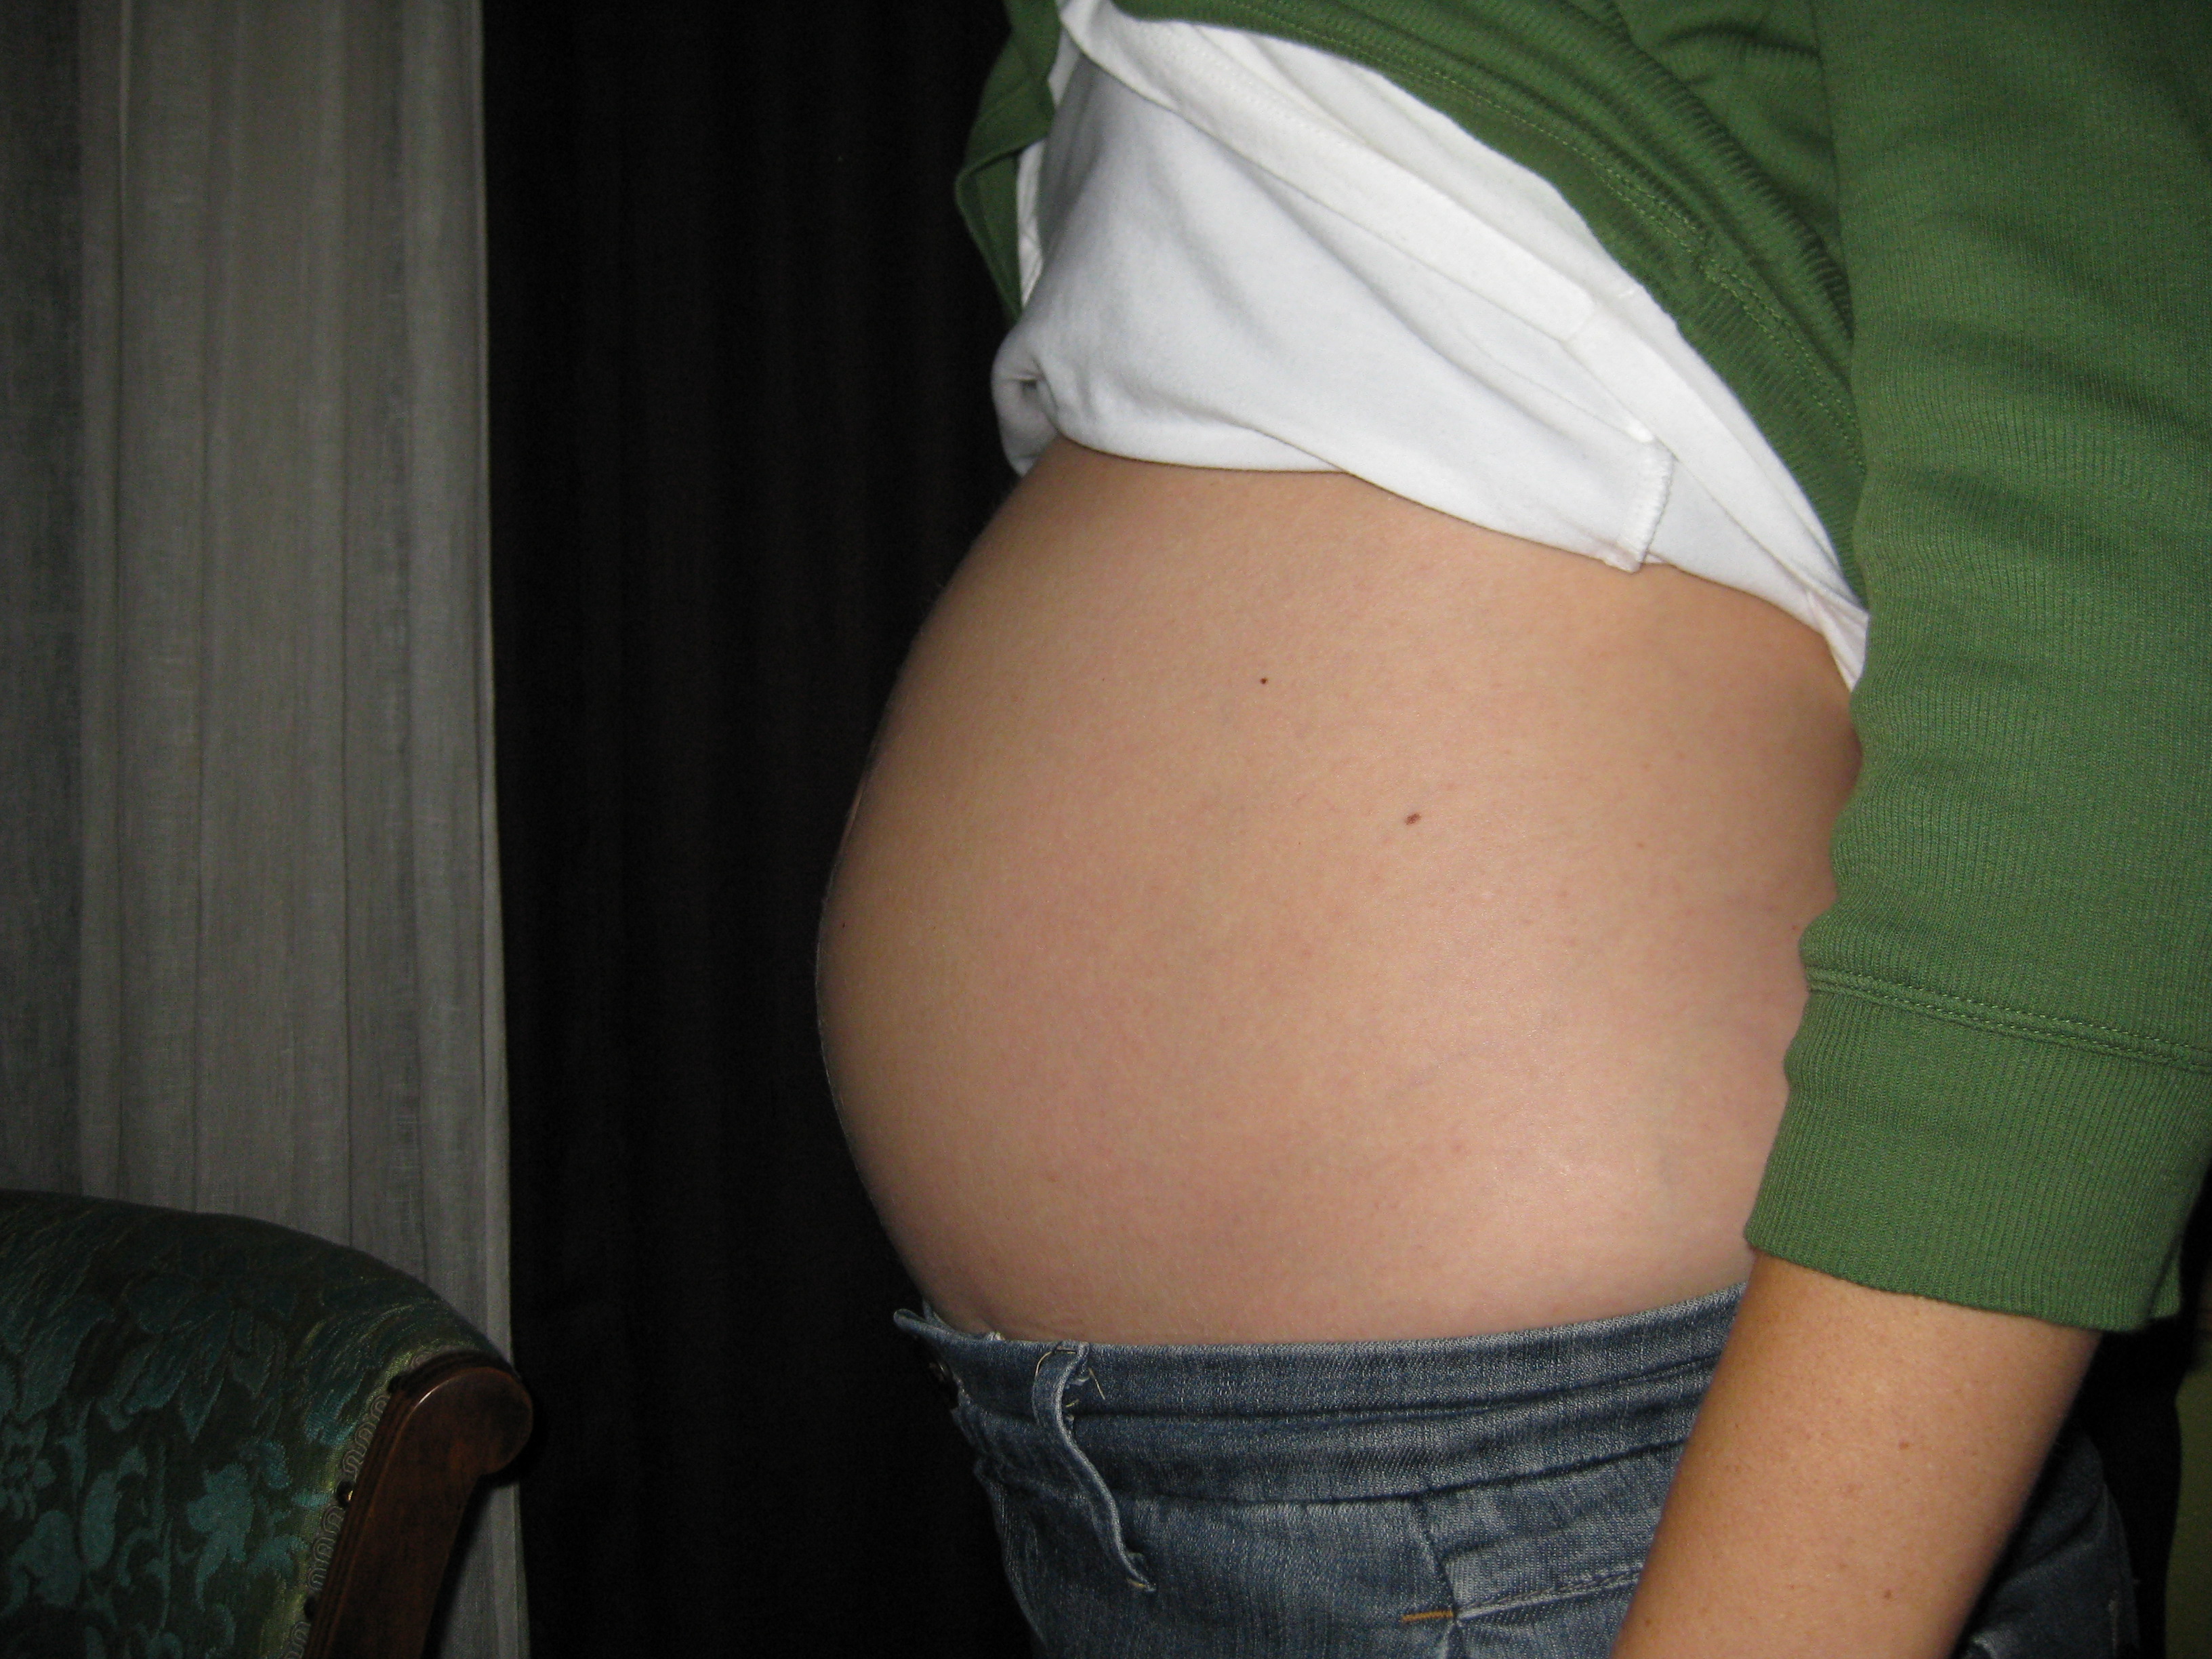 Как выглядит плод 16 недель беременности фото